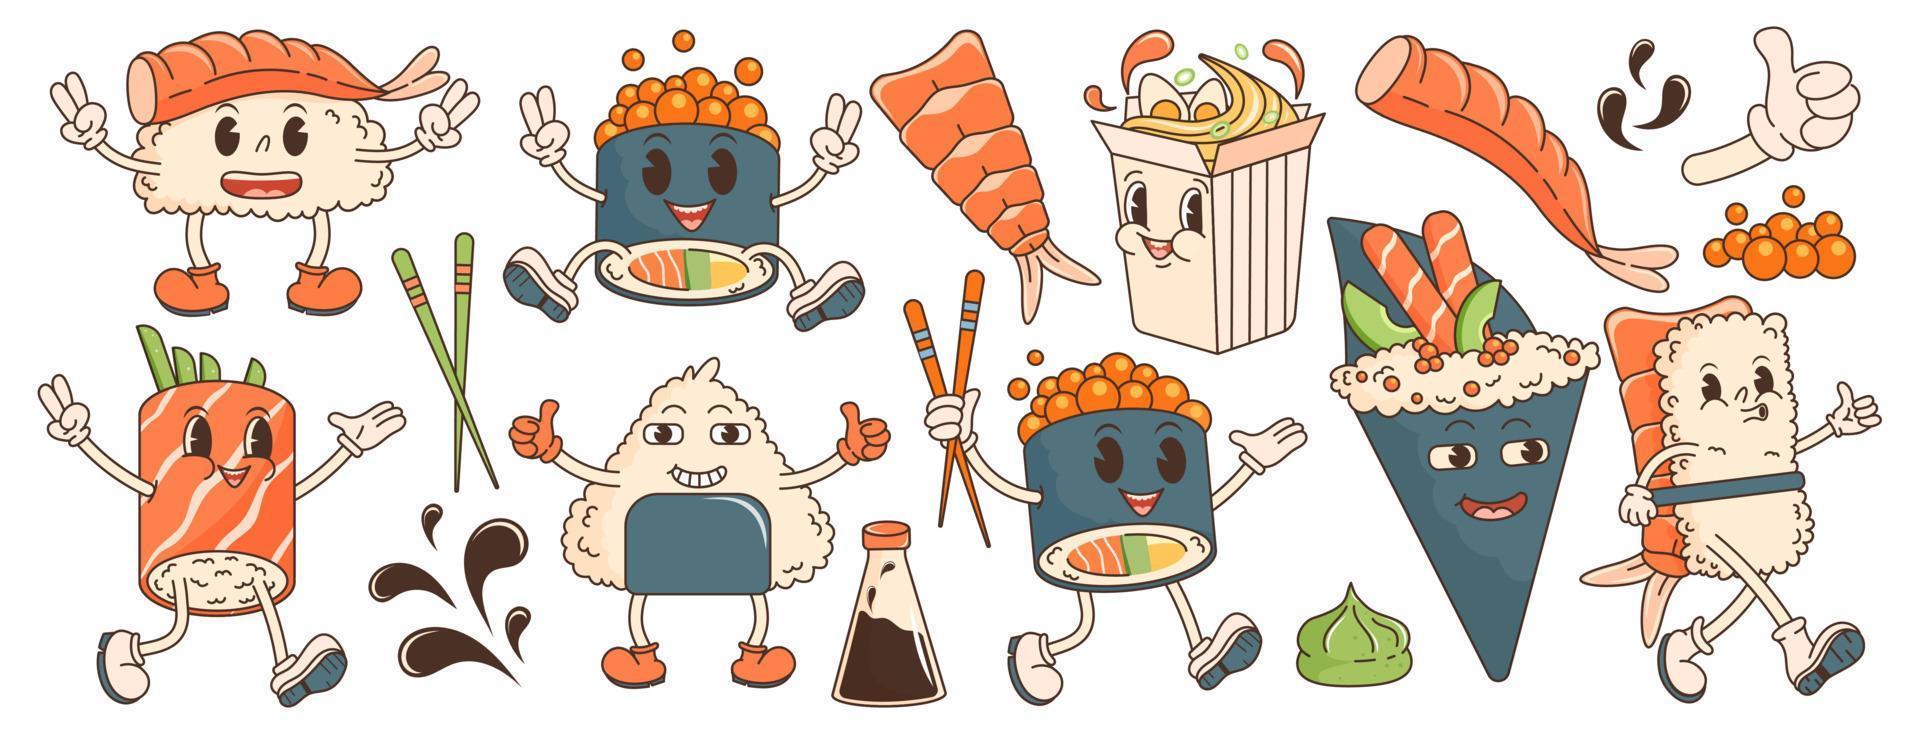 personaje de dibujos animados comida asiática retro años 70. pegatina grande con sushi, ramen, rollo, salsa de soja, wasabi, camarones. en estilo retro hippie maravilloso de moda. ilustración vectorial con elementos tipográficos. vector